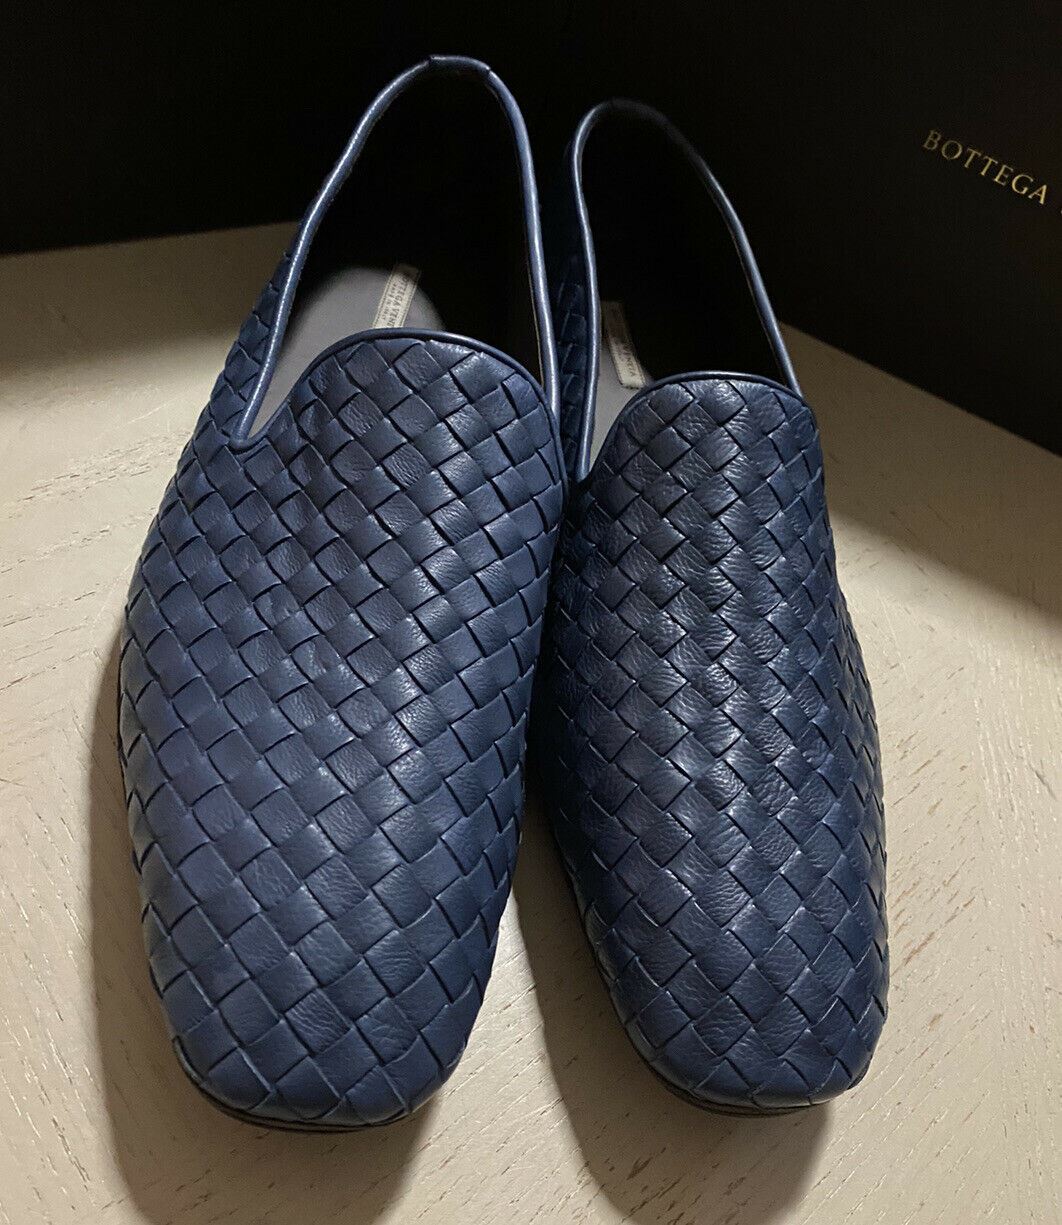 NIB $ 810 Bottega Veneta Herren Leder-Loafer-Schuhe Blau 8 US/41 Eu